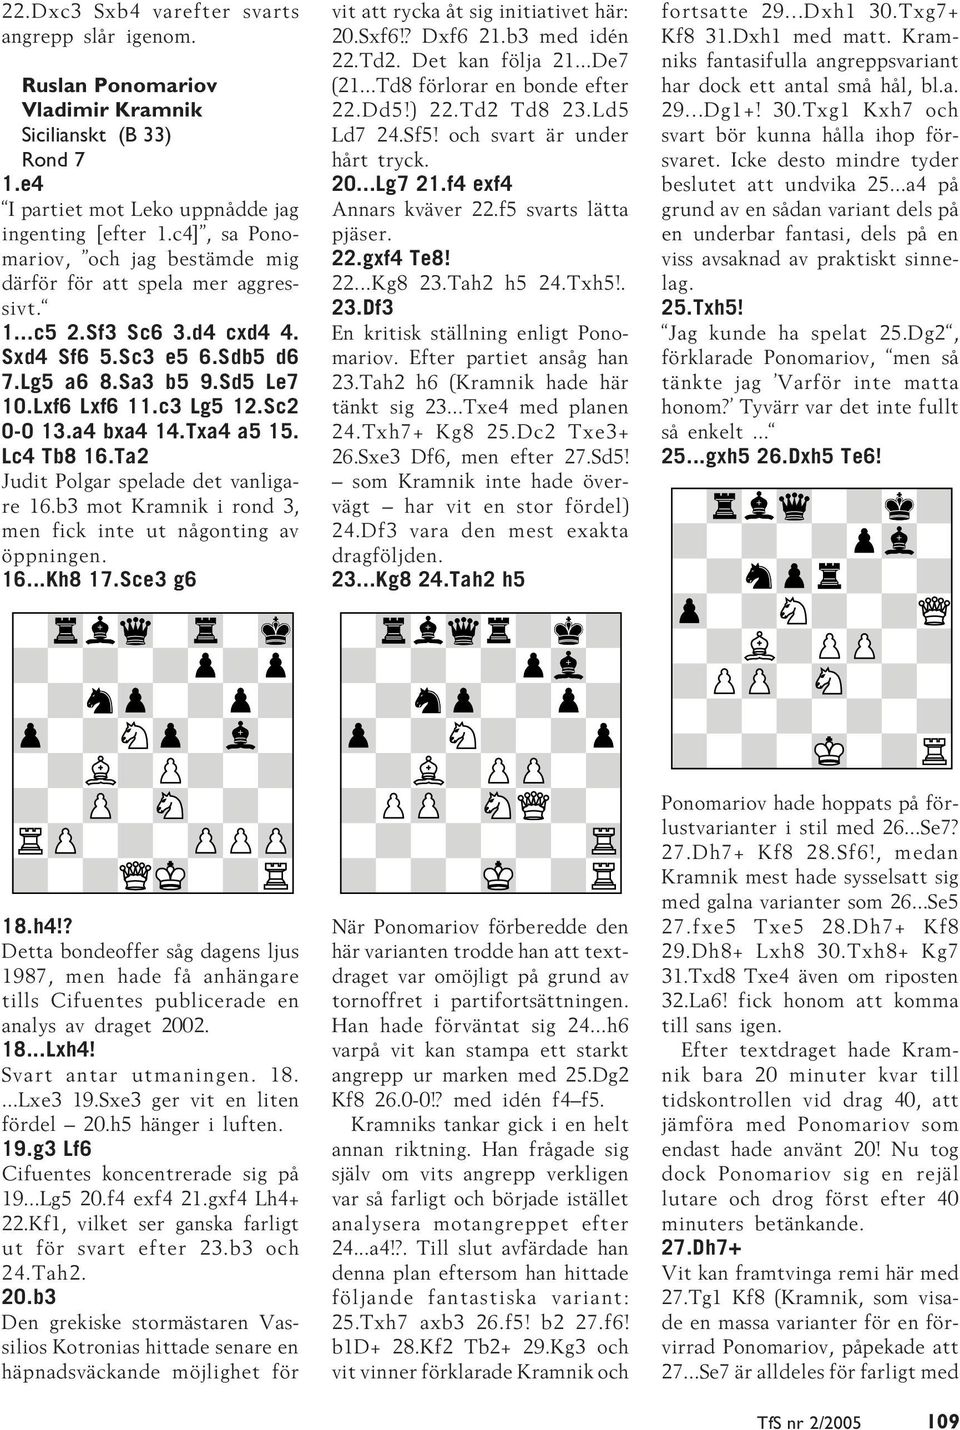 Sc2 0-0 13.a4 bxa4 14.Txa4 a5 15. Lc4 Tb8 16.Ta2 Judit Polgar spelade det vanligare 16.b3 mot Kramnik i rond 3, men fick inte ut någonting av öppningen. 16...Kh8 17.